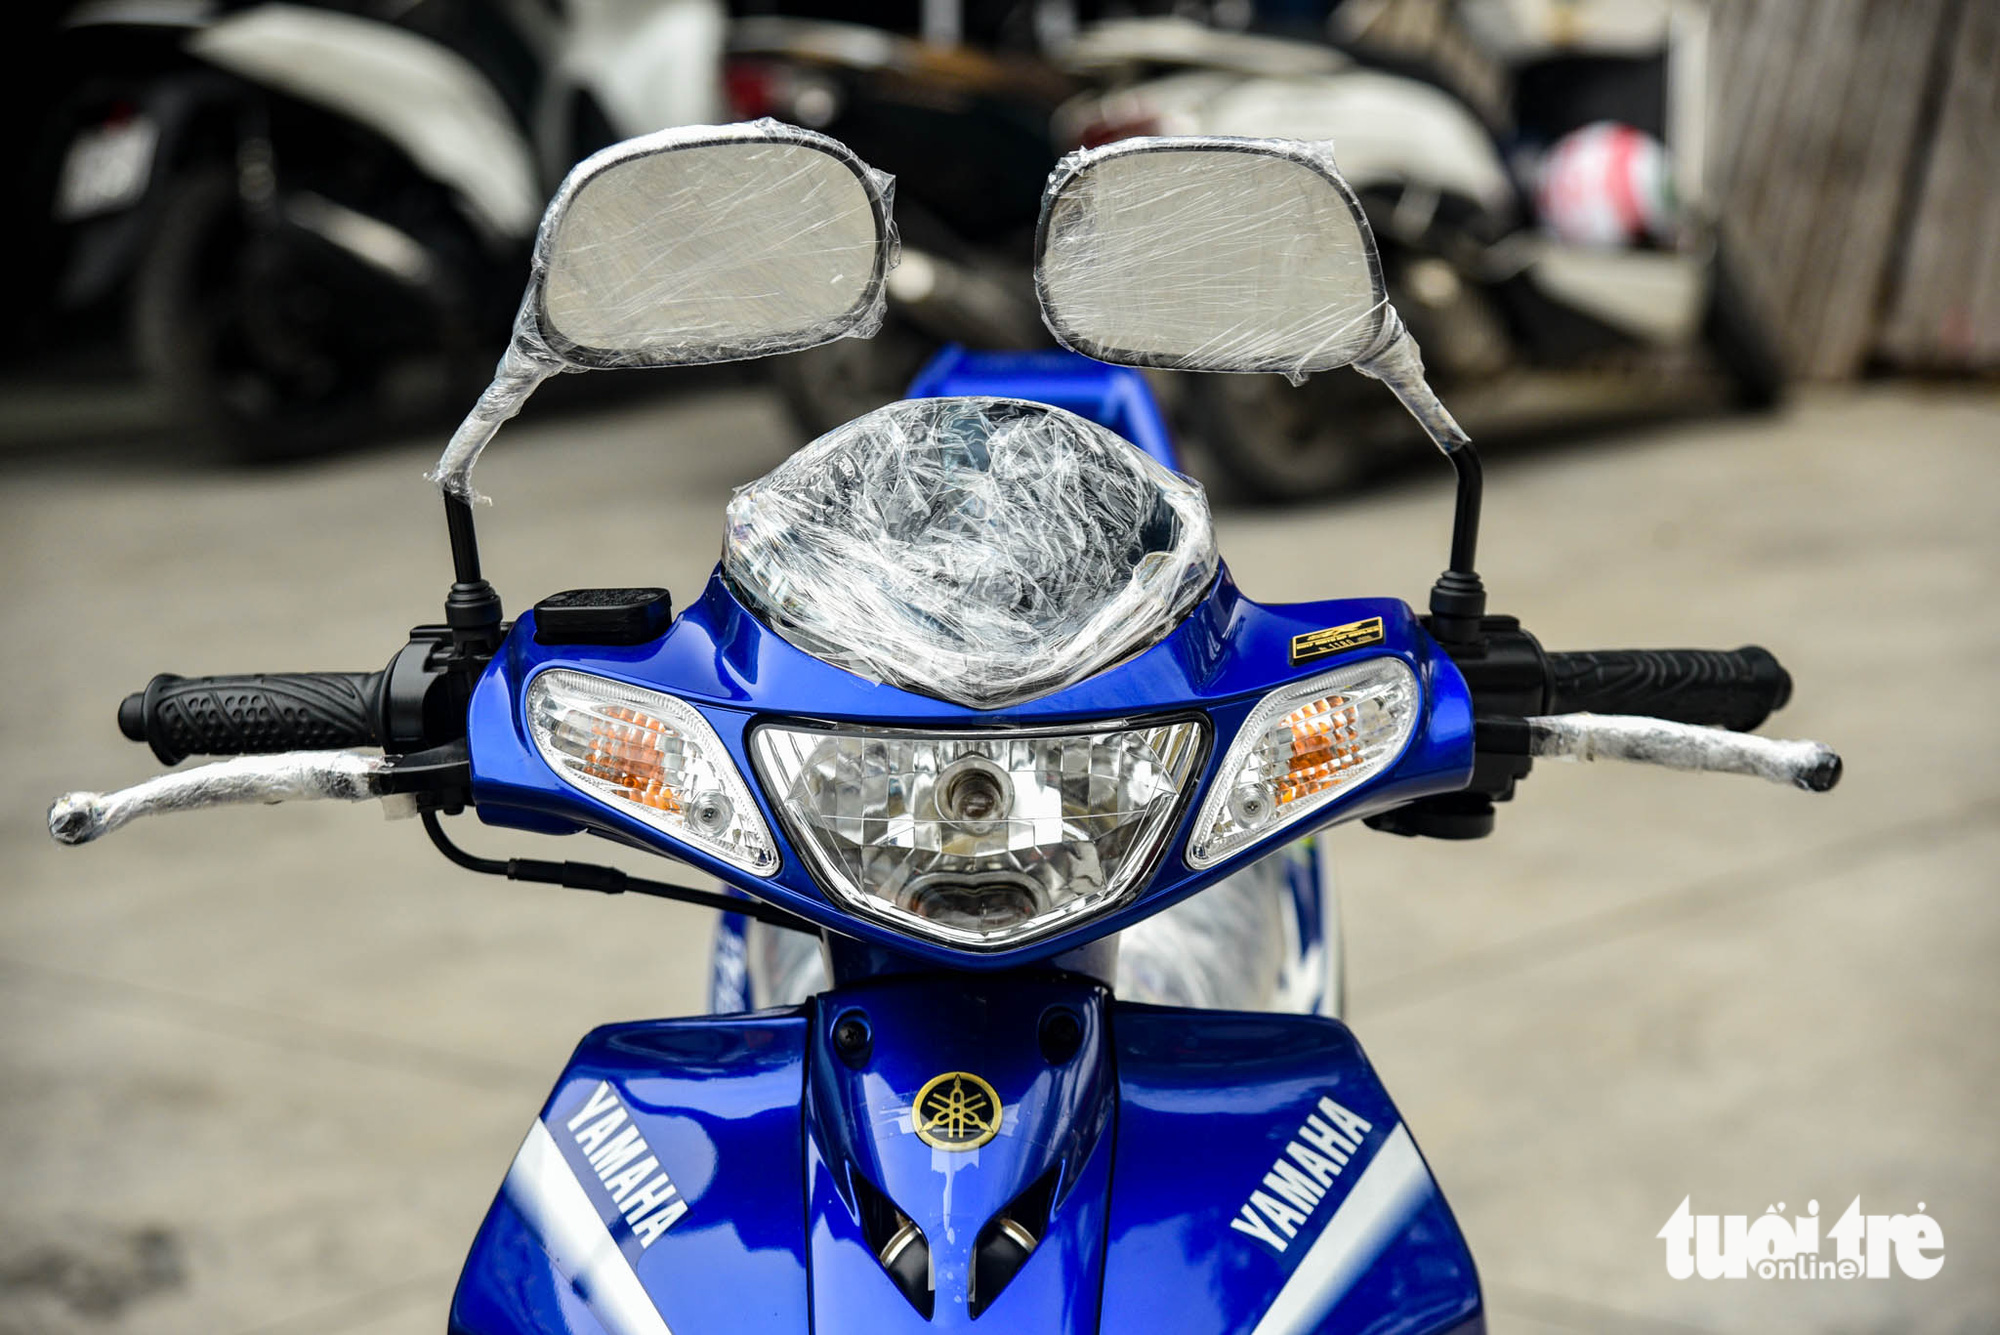 Yamaha 125ZR bản giới hạn giá khoảng 600 triệu đồng tại Hà Nội, dành cho dân chơi thích hàng độc - Ảnh 16.